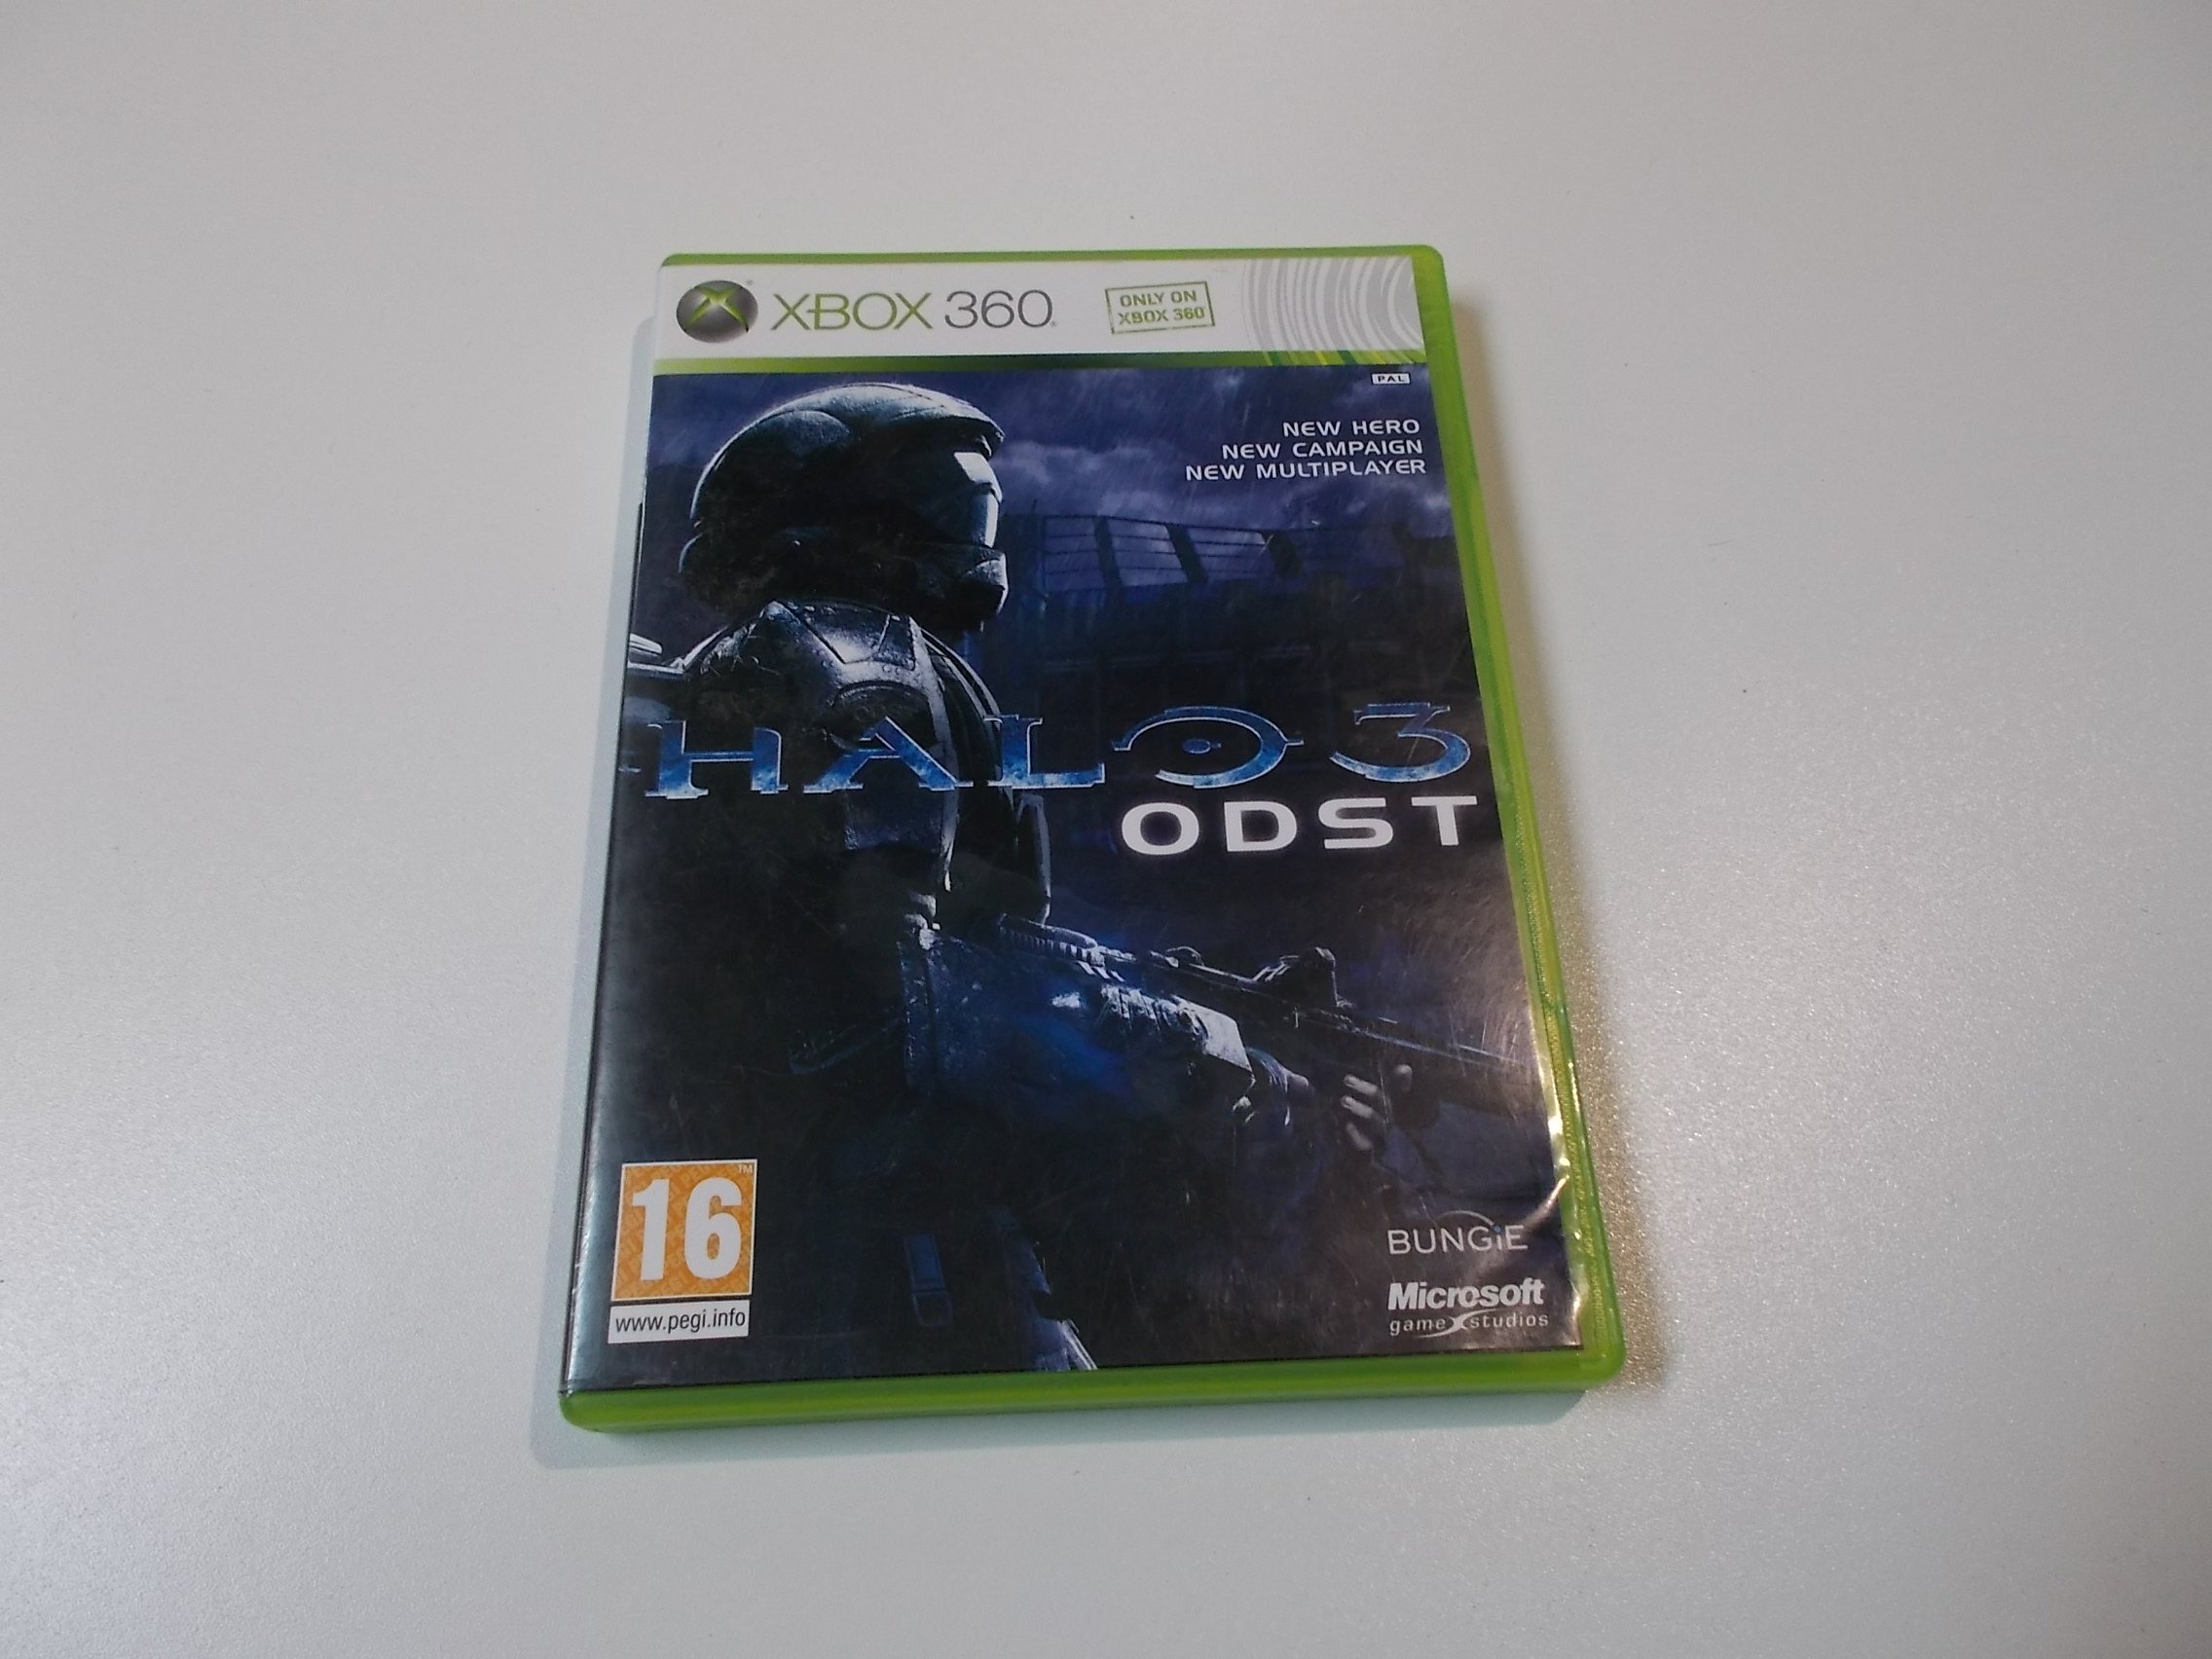 HALO 3 ODST - GRA Xbox 360 - Opole 0394